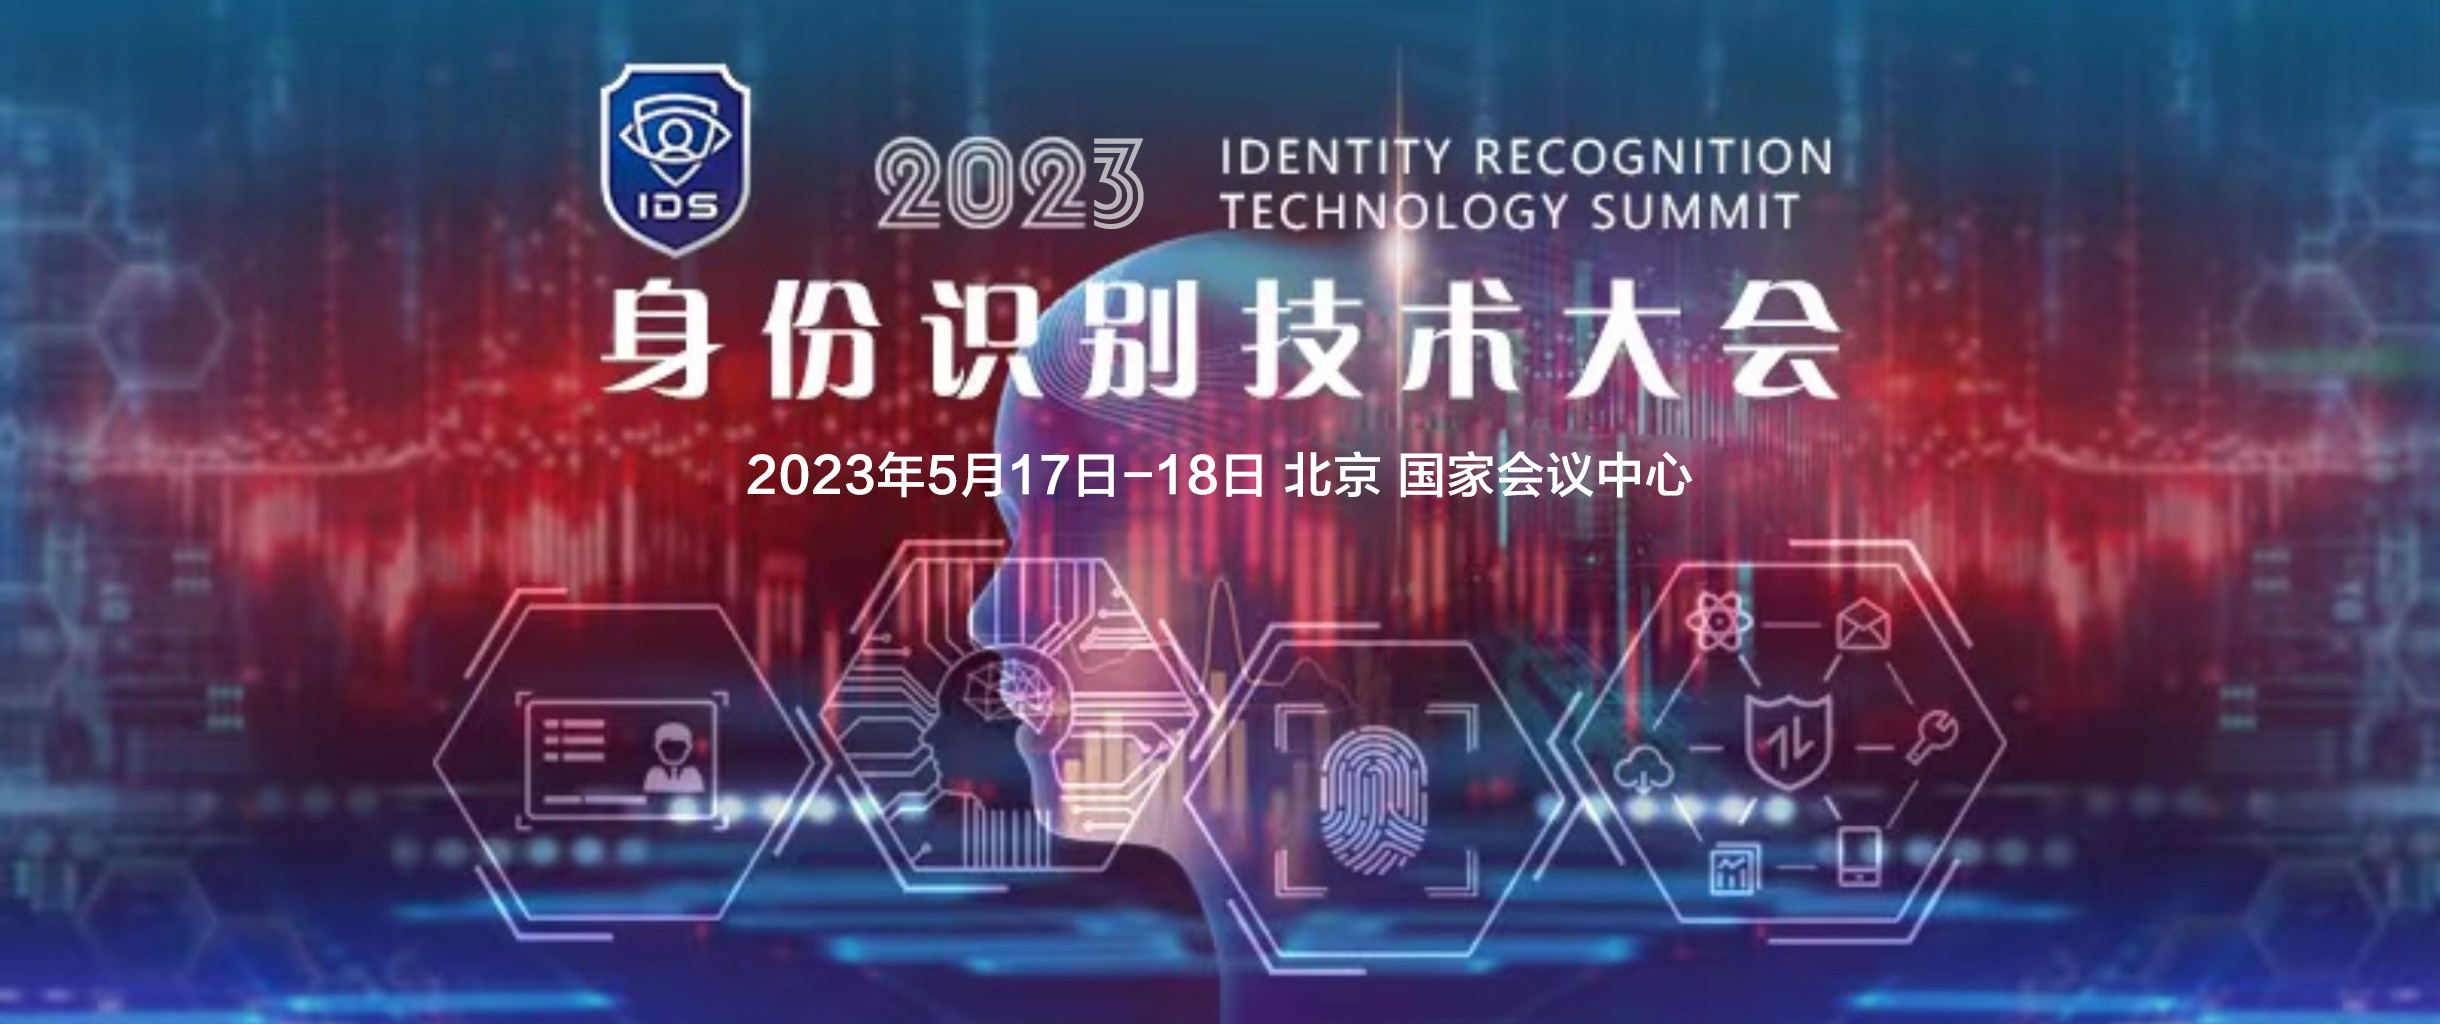 IDS 身份识别技术大会 2023